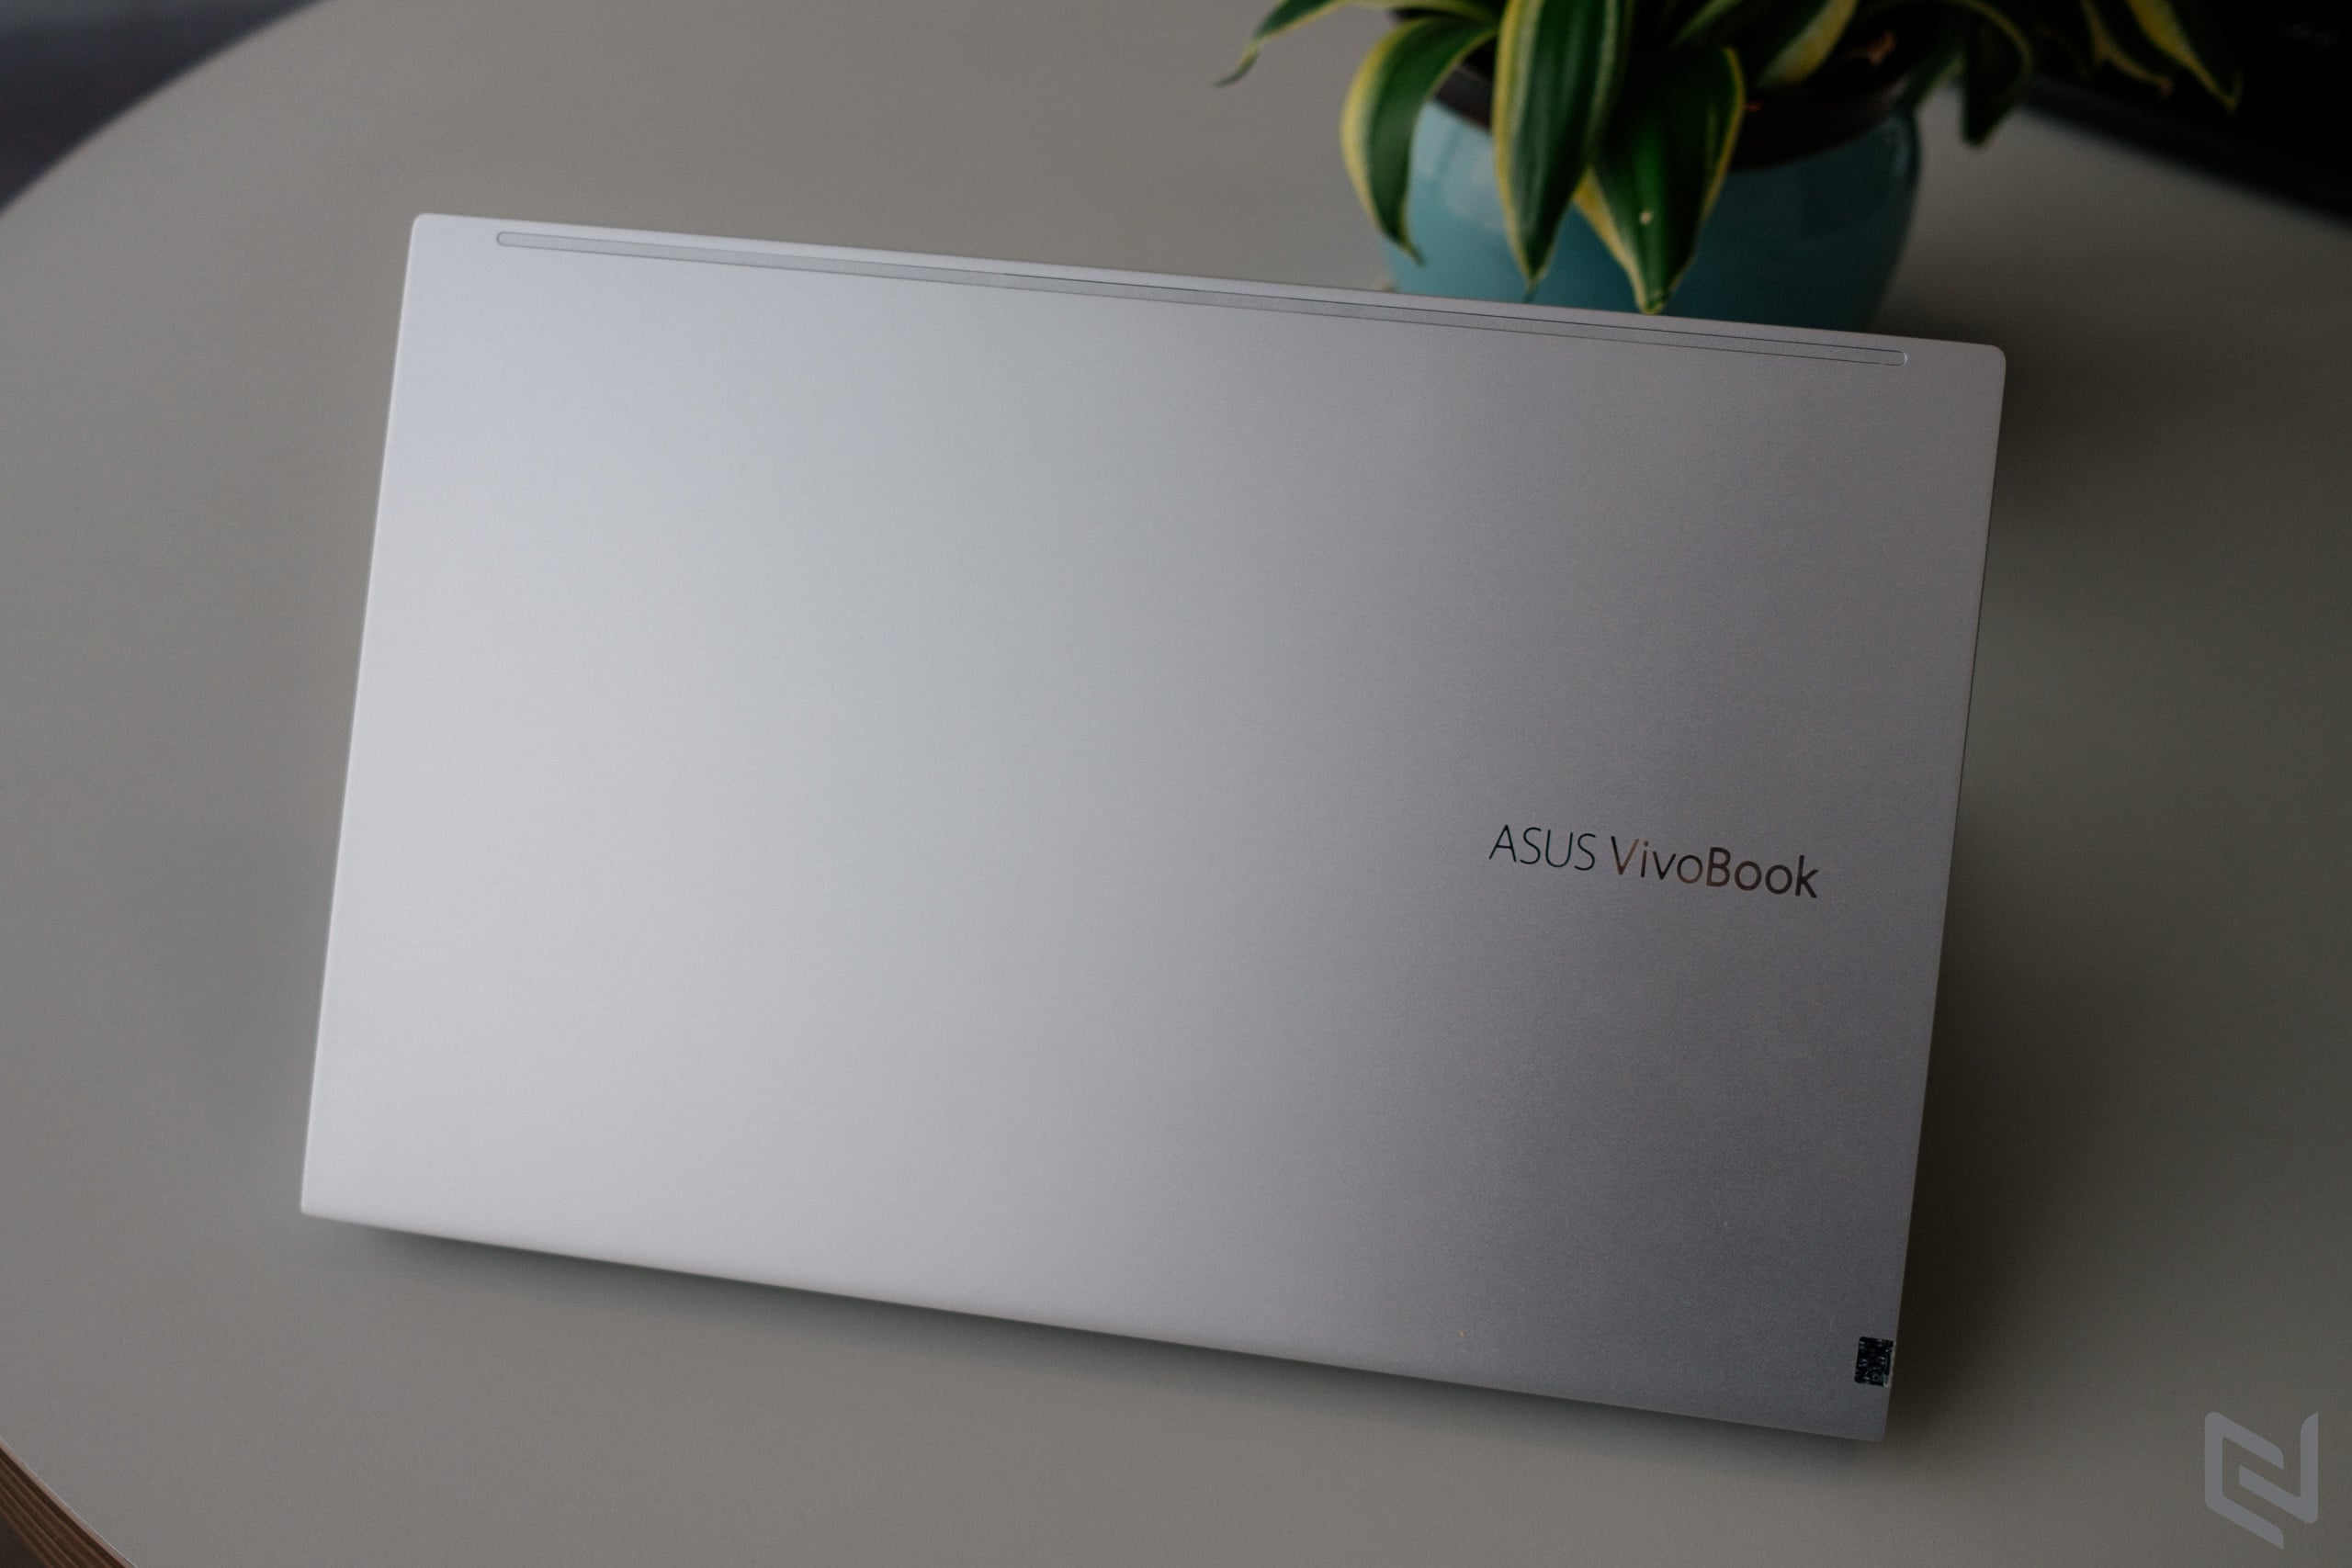 ASUS trình làng bộ đôi VivoBook 14 A415 và VivoBook 15 A515, tích hợp vi xử lý Intel Core thế hệ 11 thiết lập TDP 28W